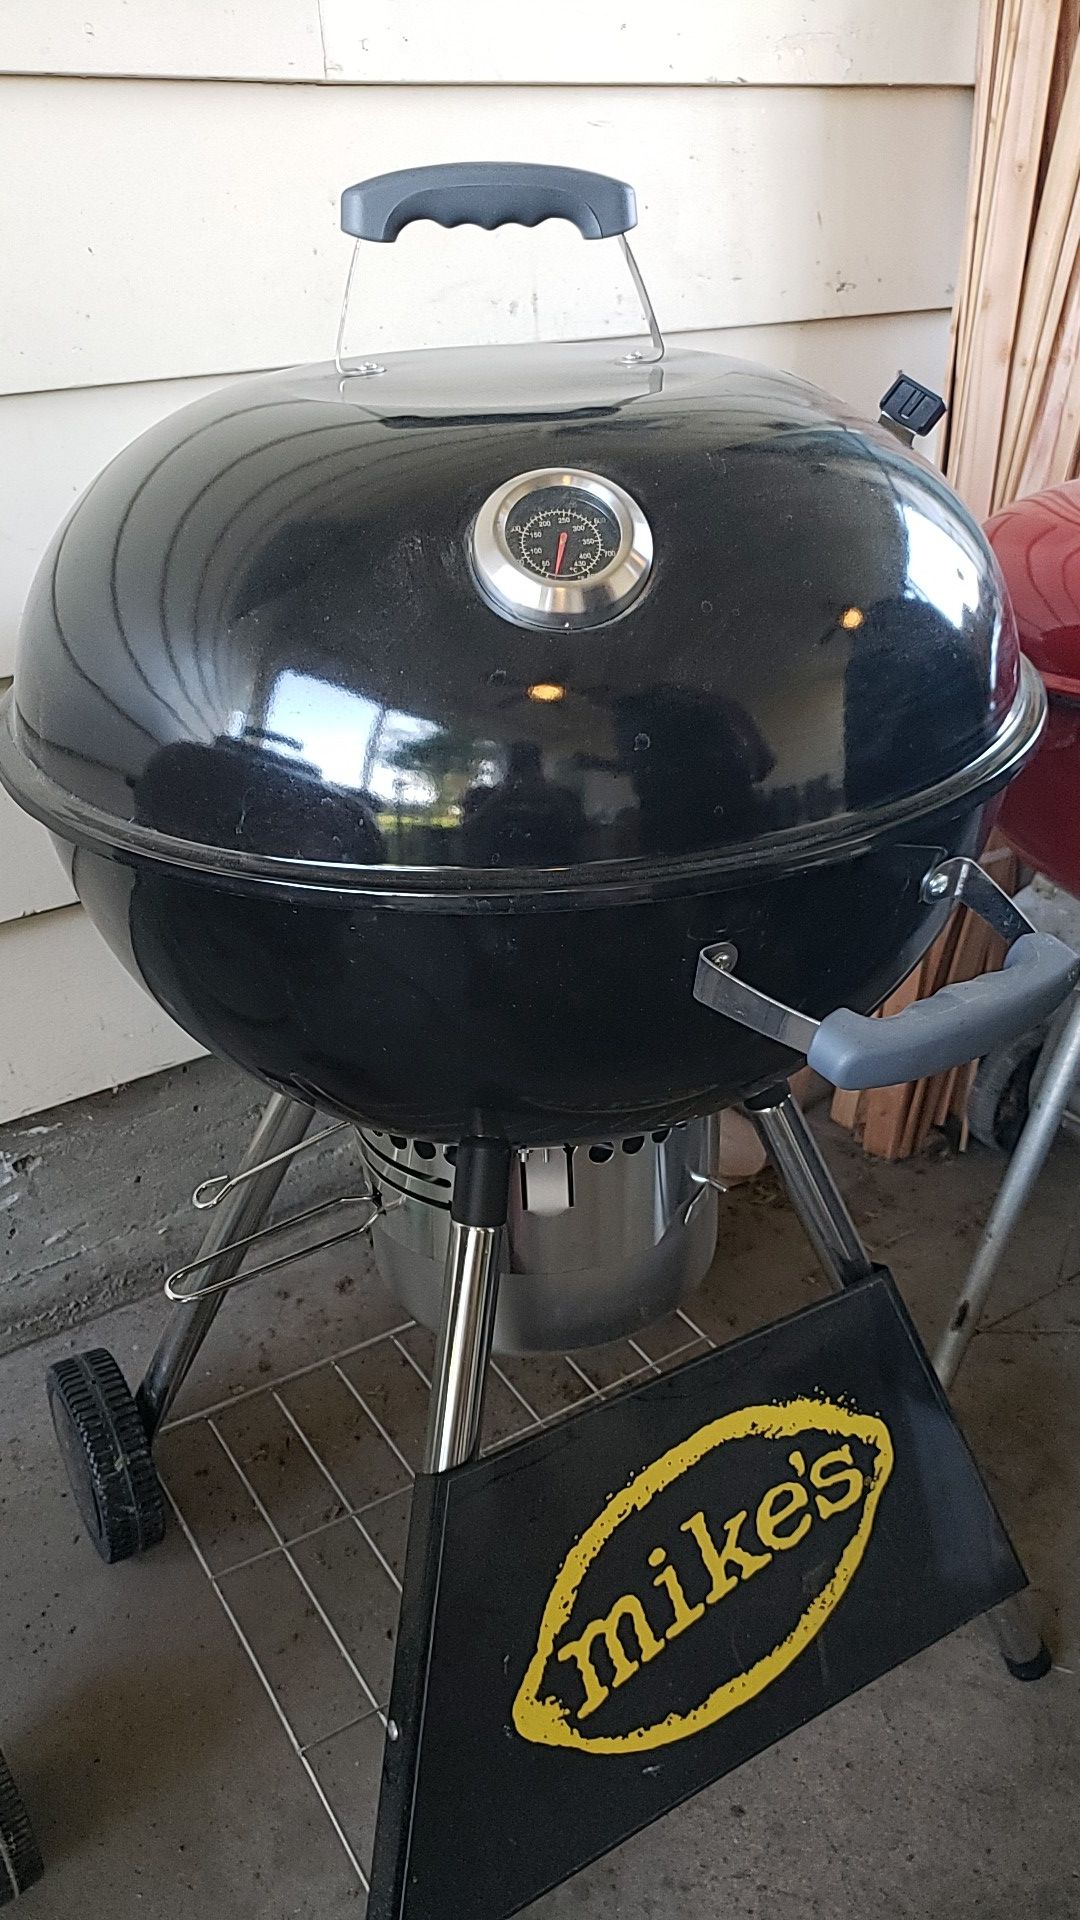 New Bbq grill